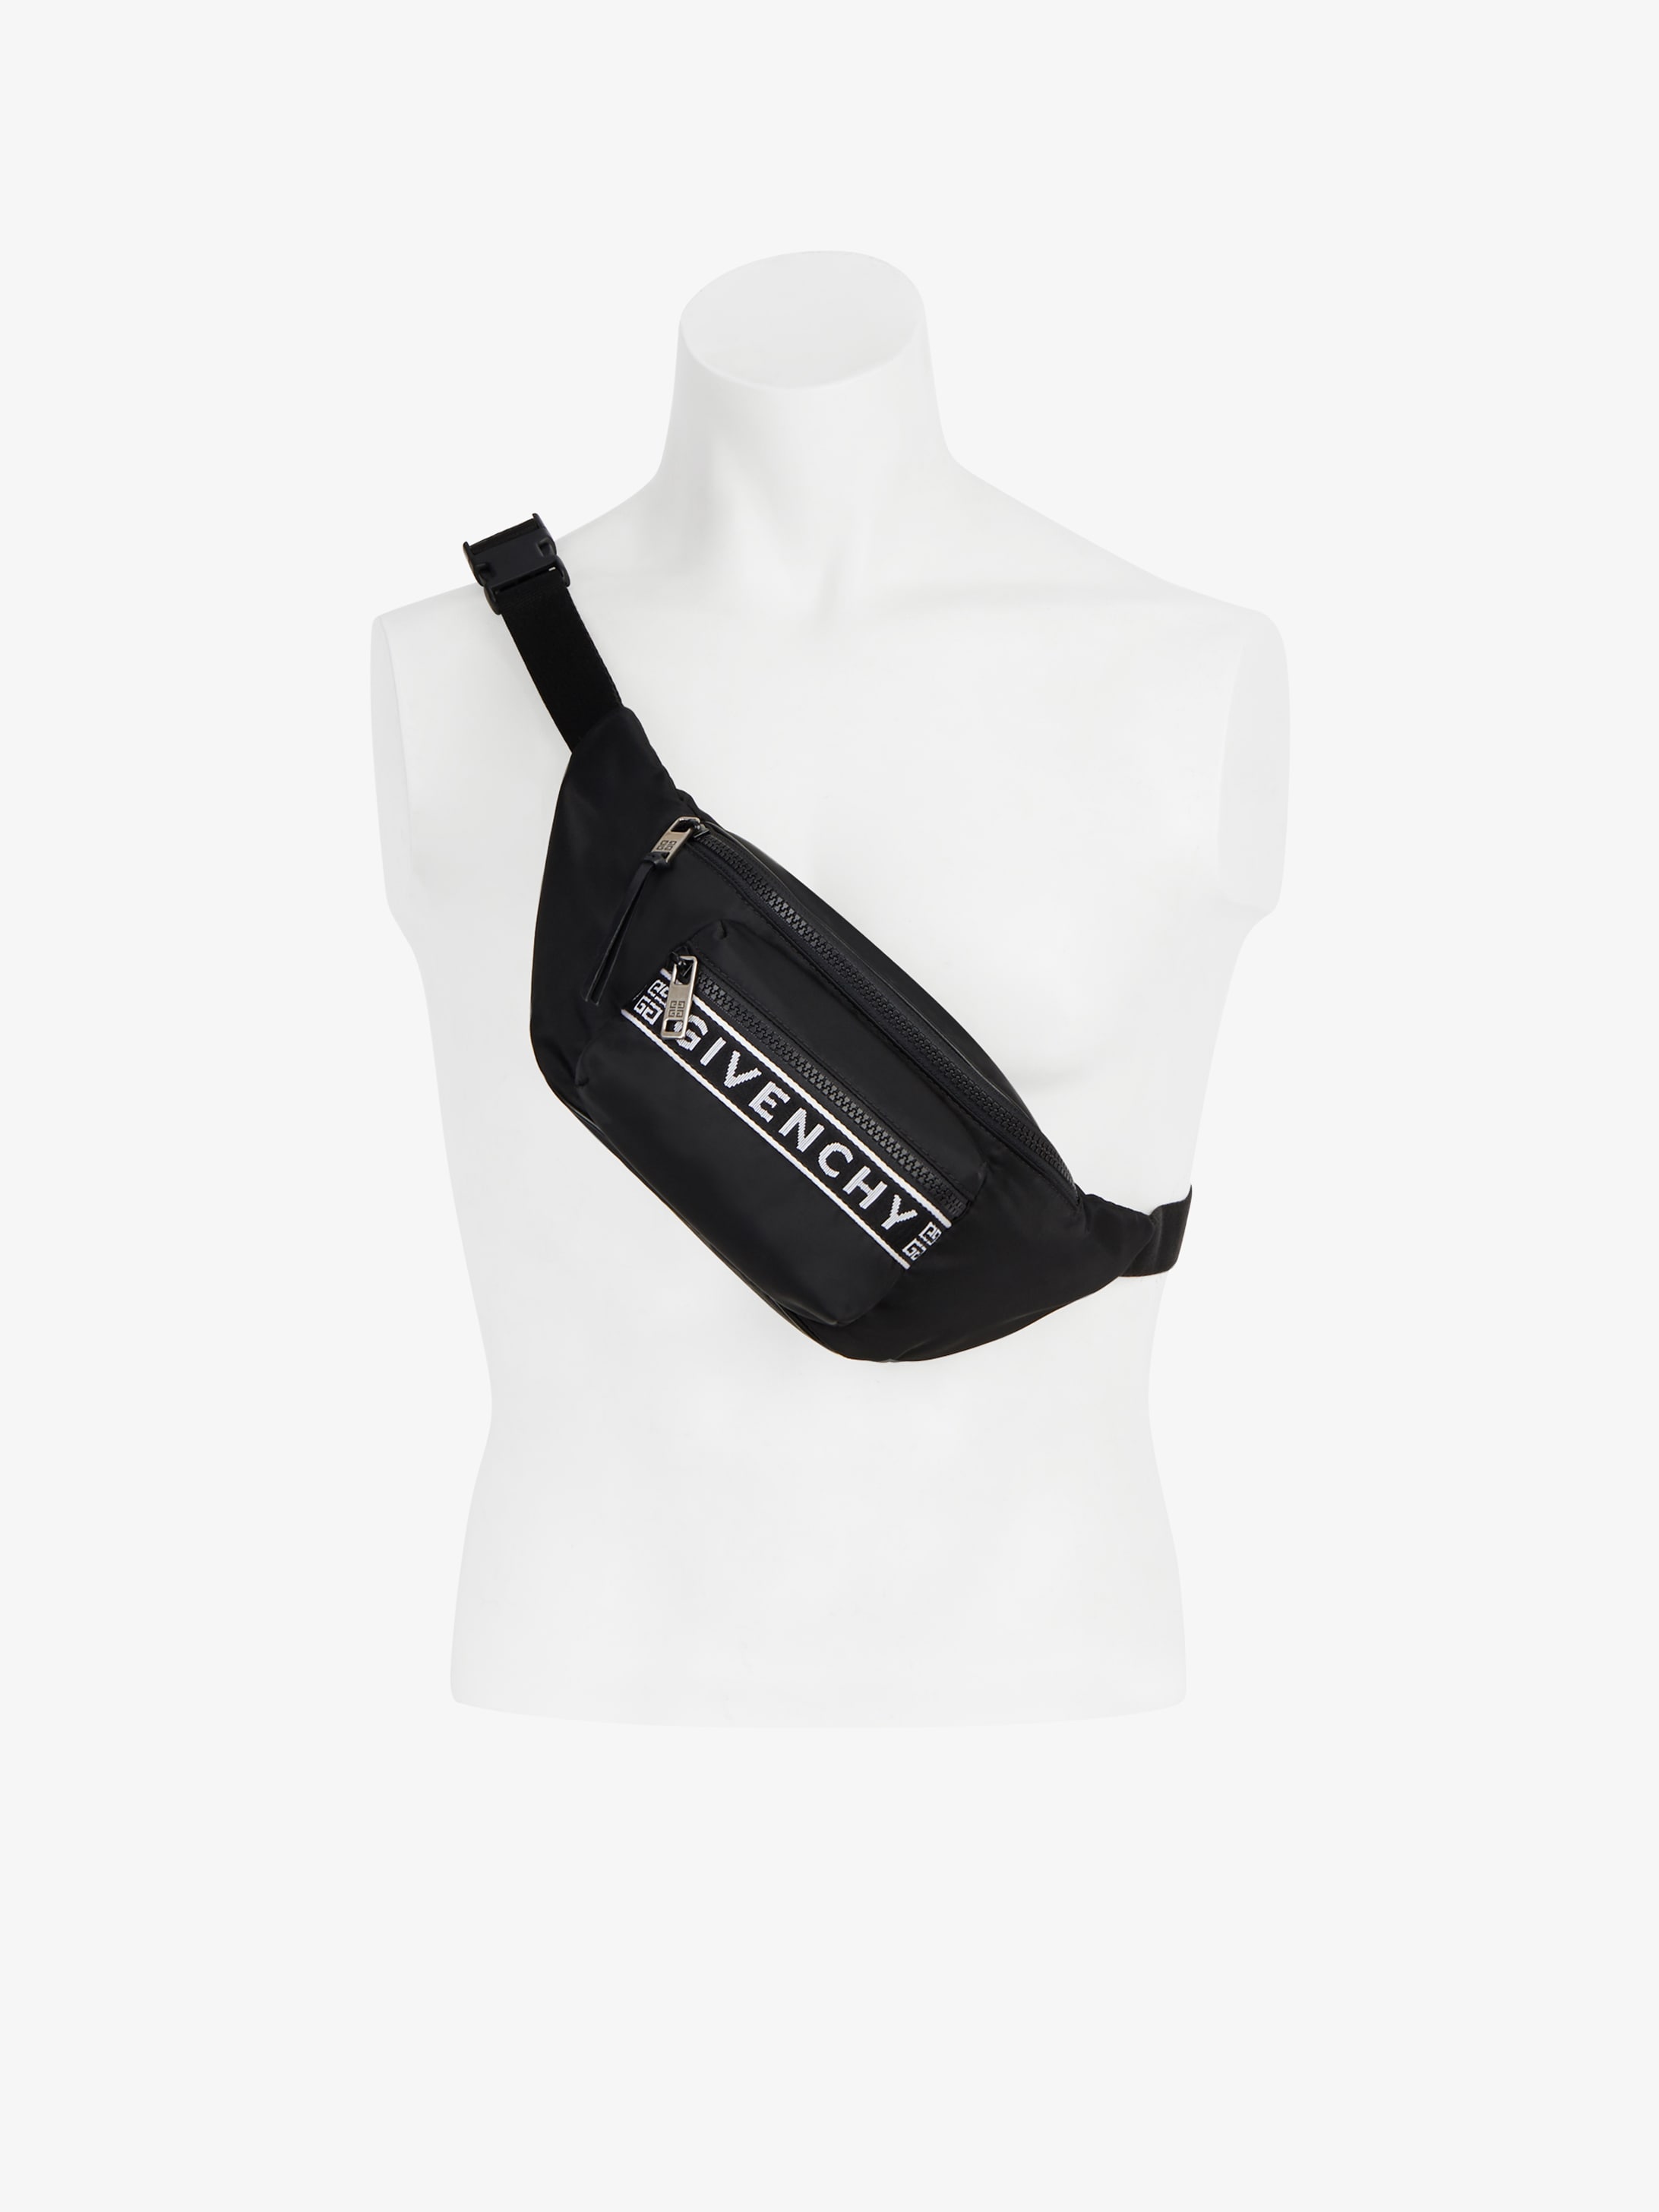 givenchy belt bag price